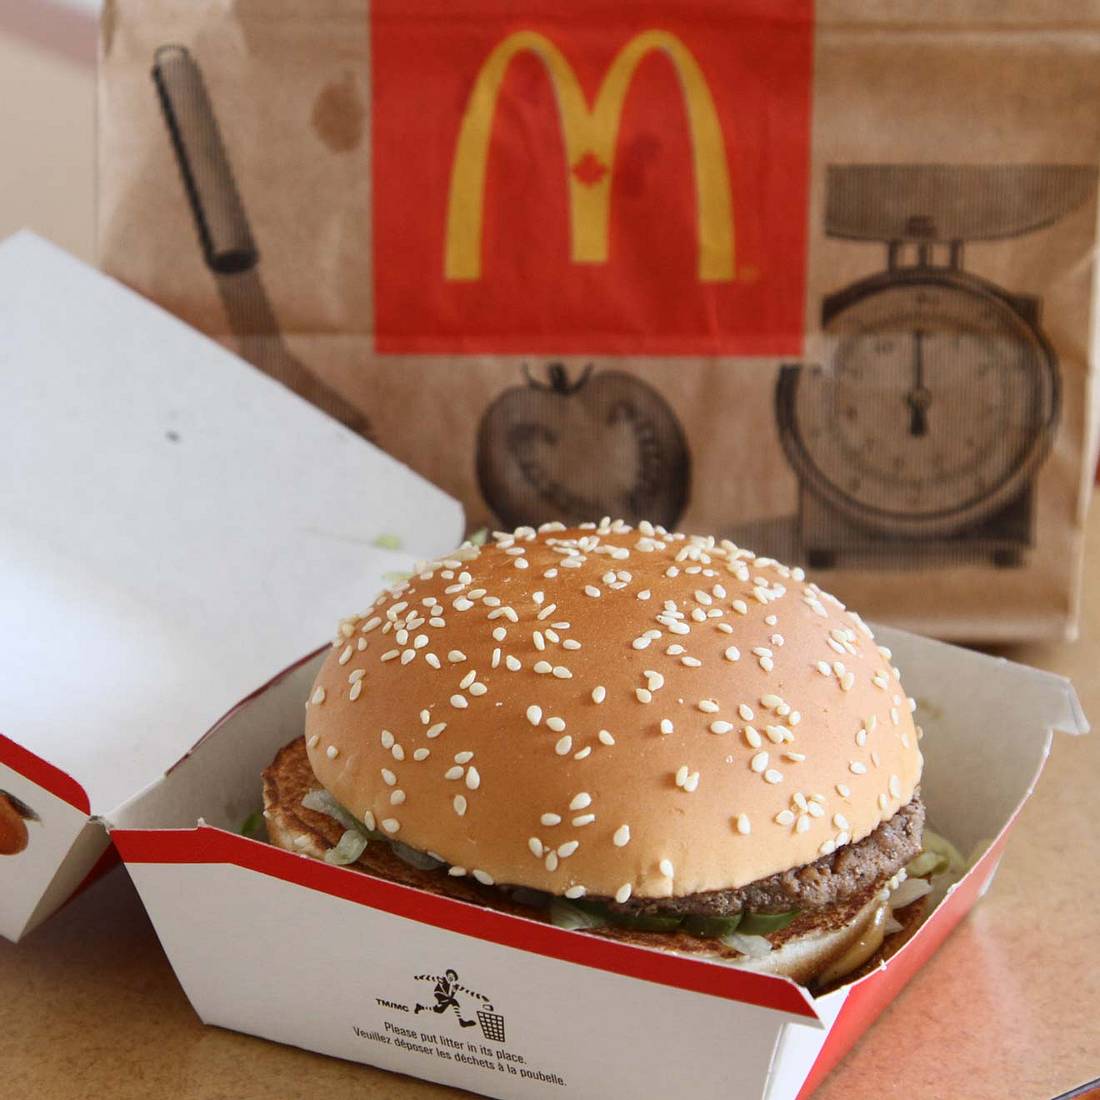 Burger zum Frühstück gibt's bei McDonalds. Na dann, guten Appetit!